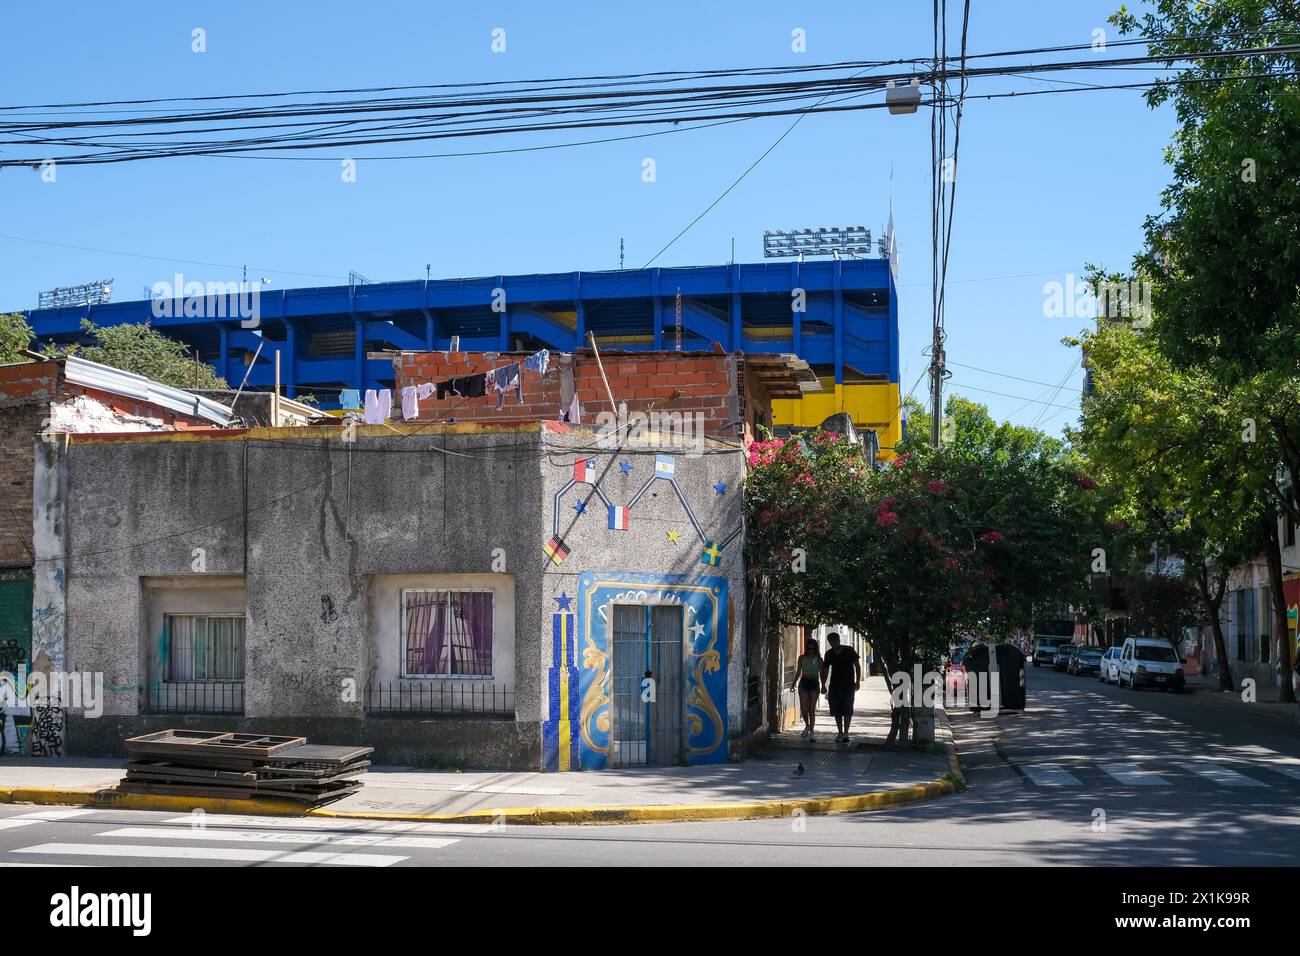 La Boca, Buenos Aires, Argentinien - La Bombonera Stadion in Blau und Gelb. La Boca, bunt bemalte Häuser im Hafenviertel rund um das El Stockfoto